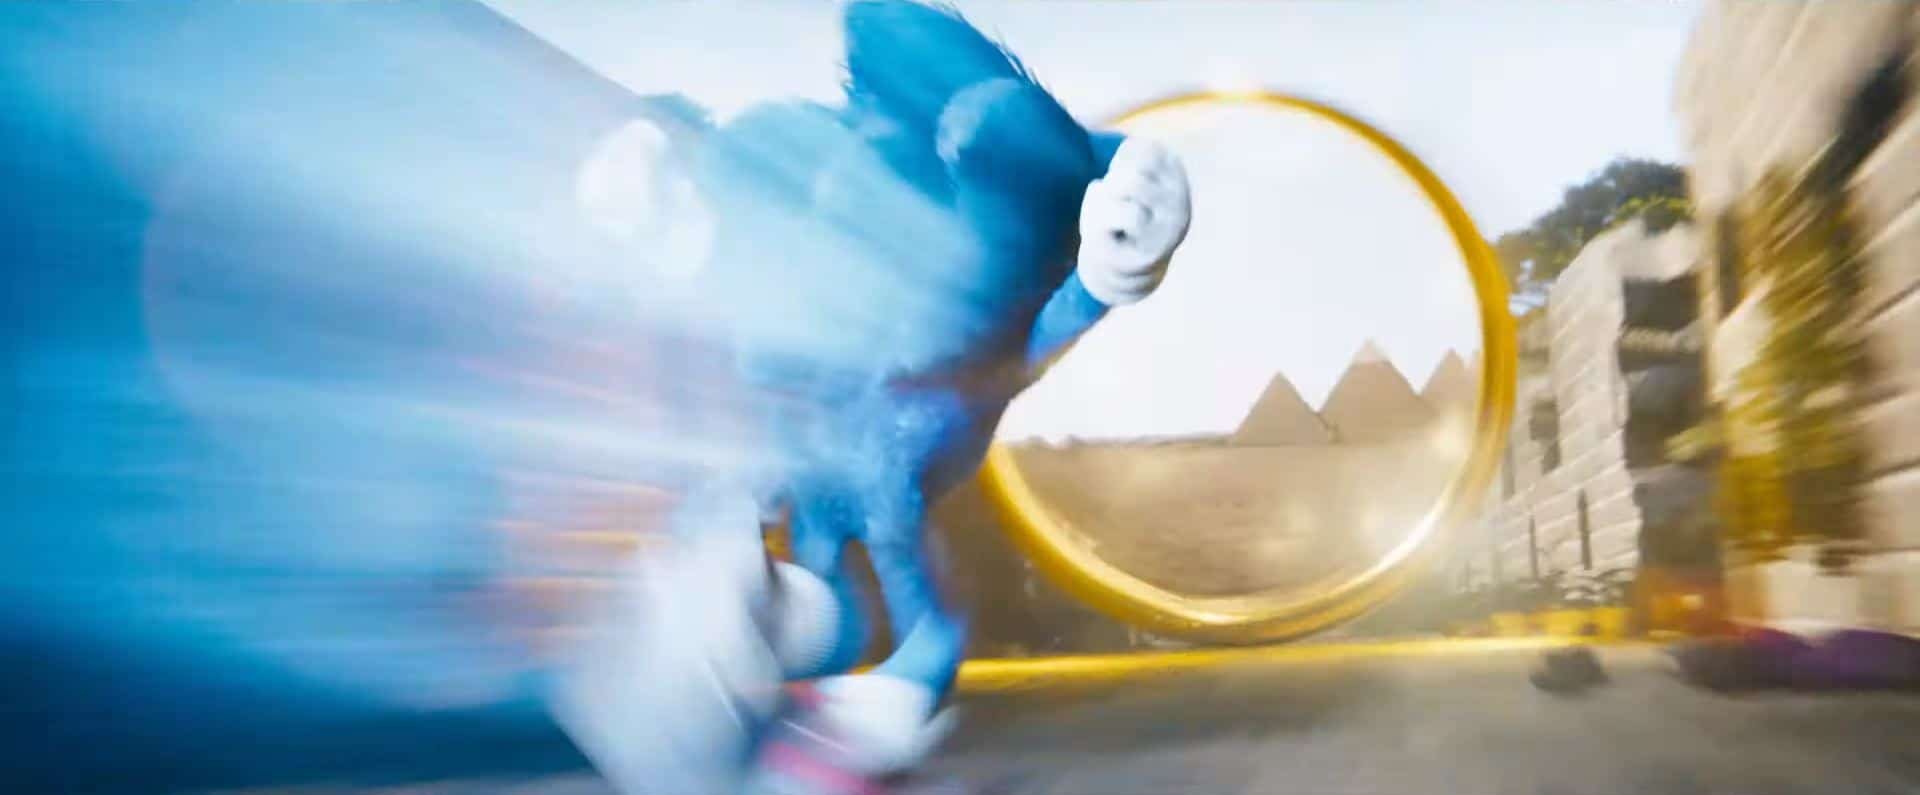 Netflix - Os 3 estágios vendo um filme. Filme: Sonic 2: O